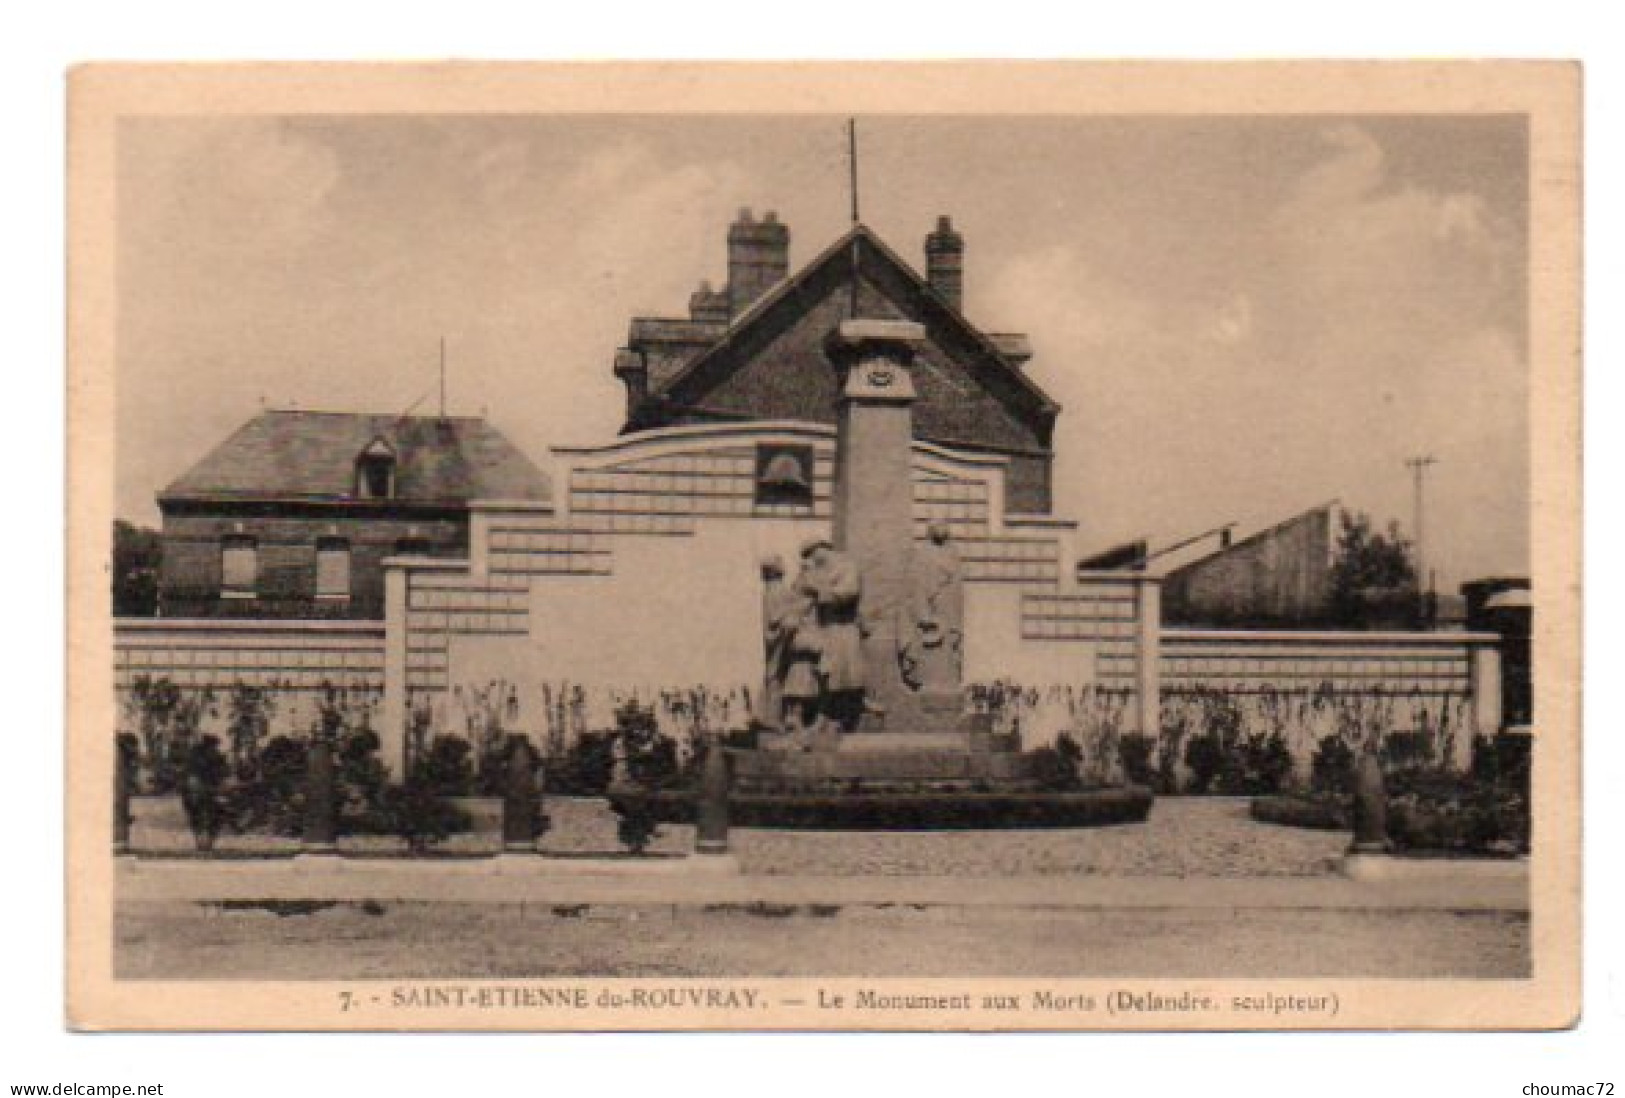 (76) 1091, Saint St Etienne Du Rouvray, Poirier 7, Le Monument Aux Morts (Delandre Sculpteur) - Saint Etienne Du Rouvray